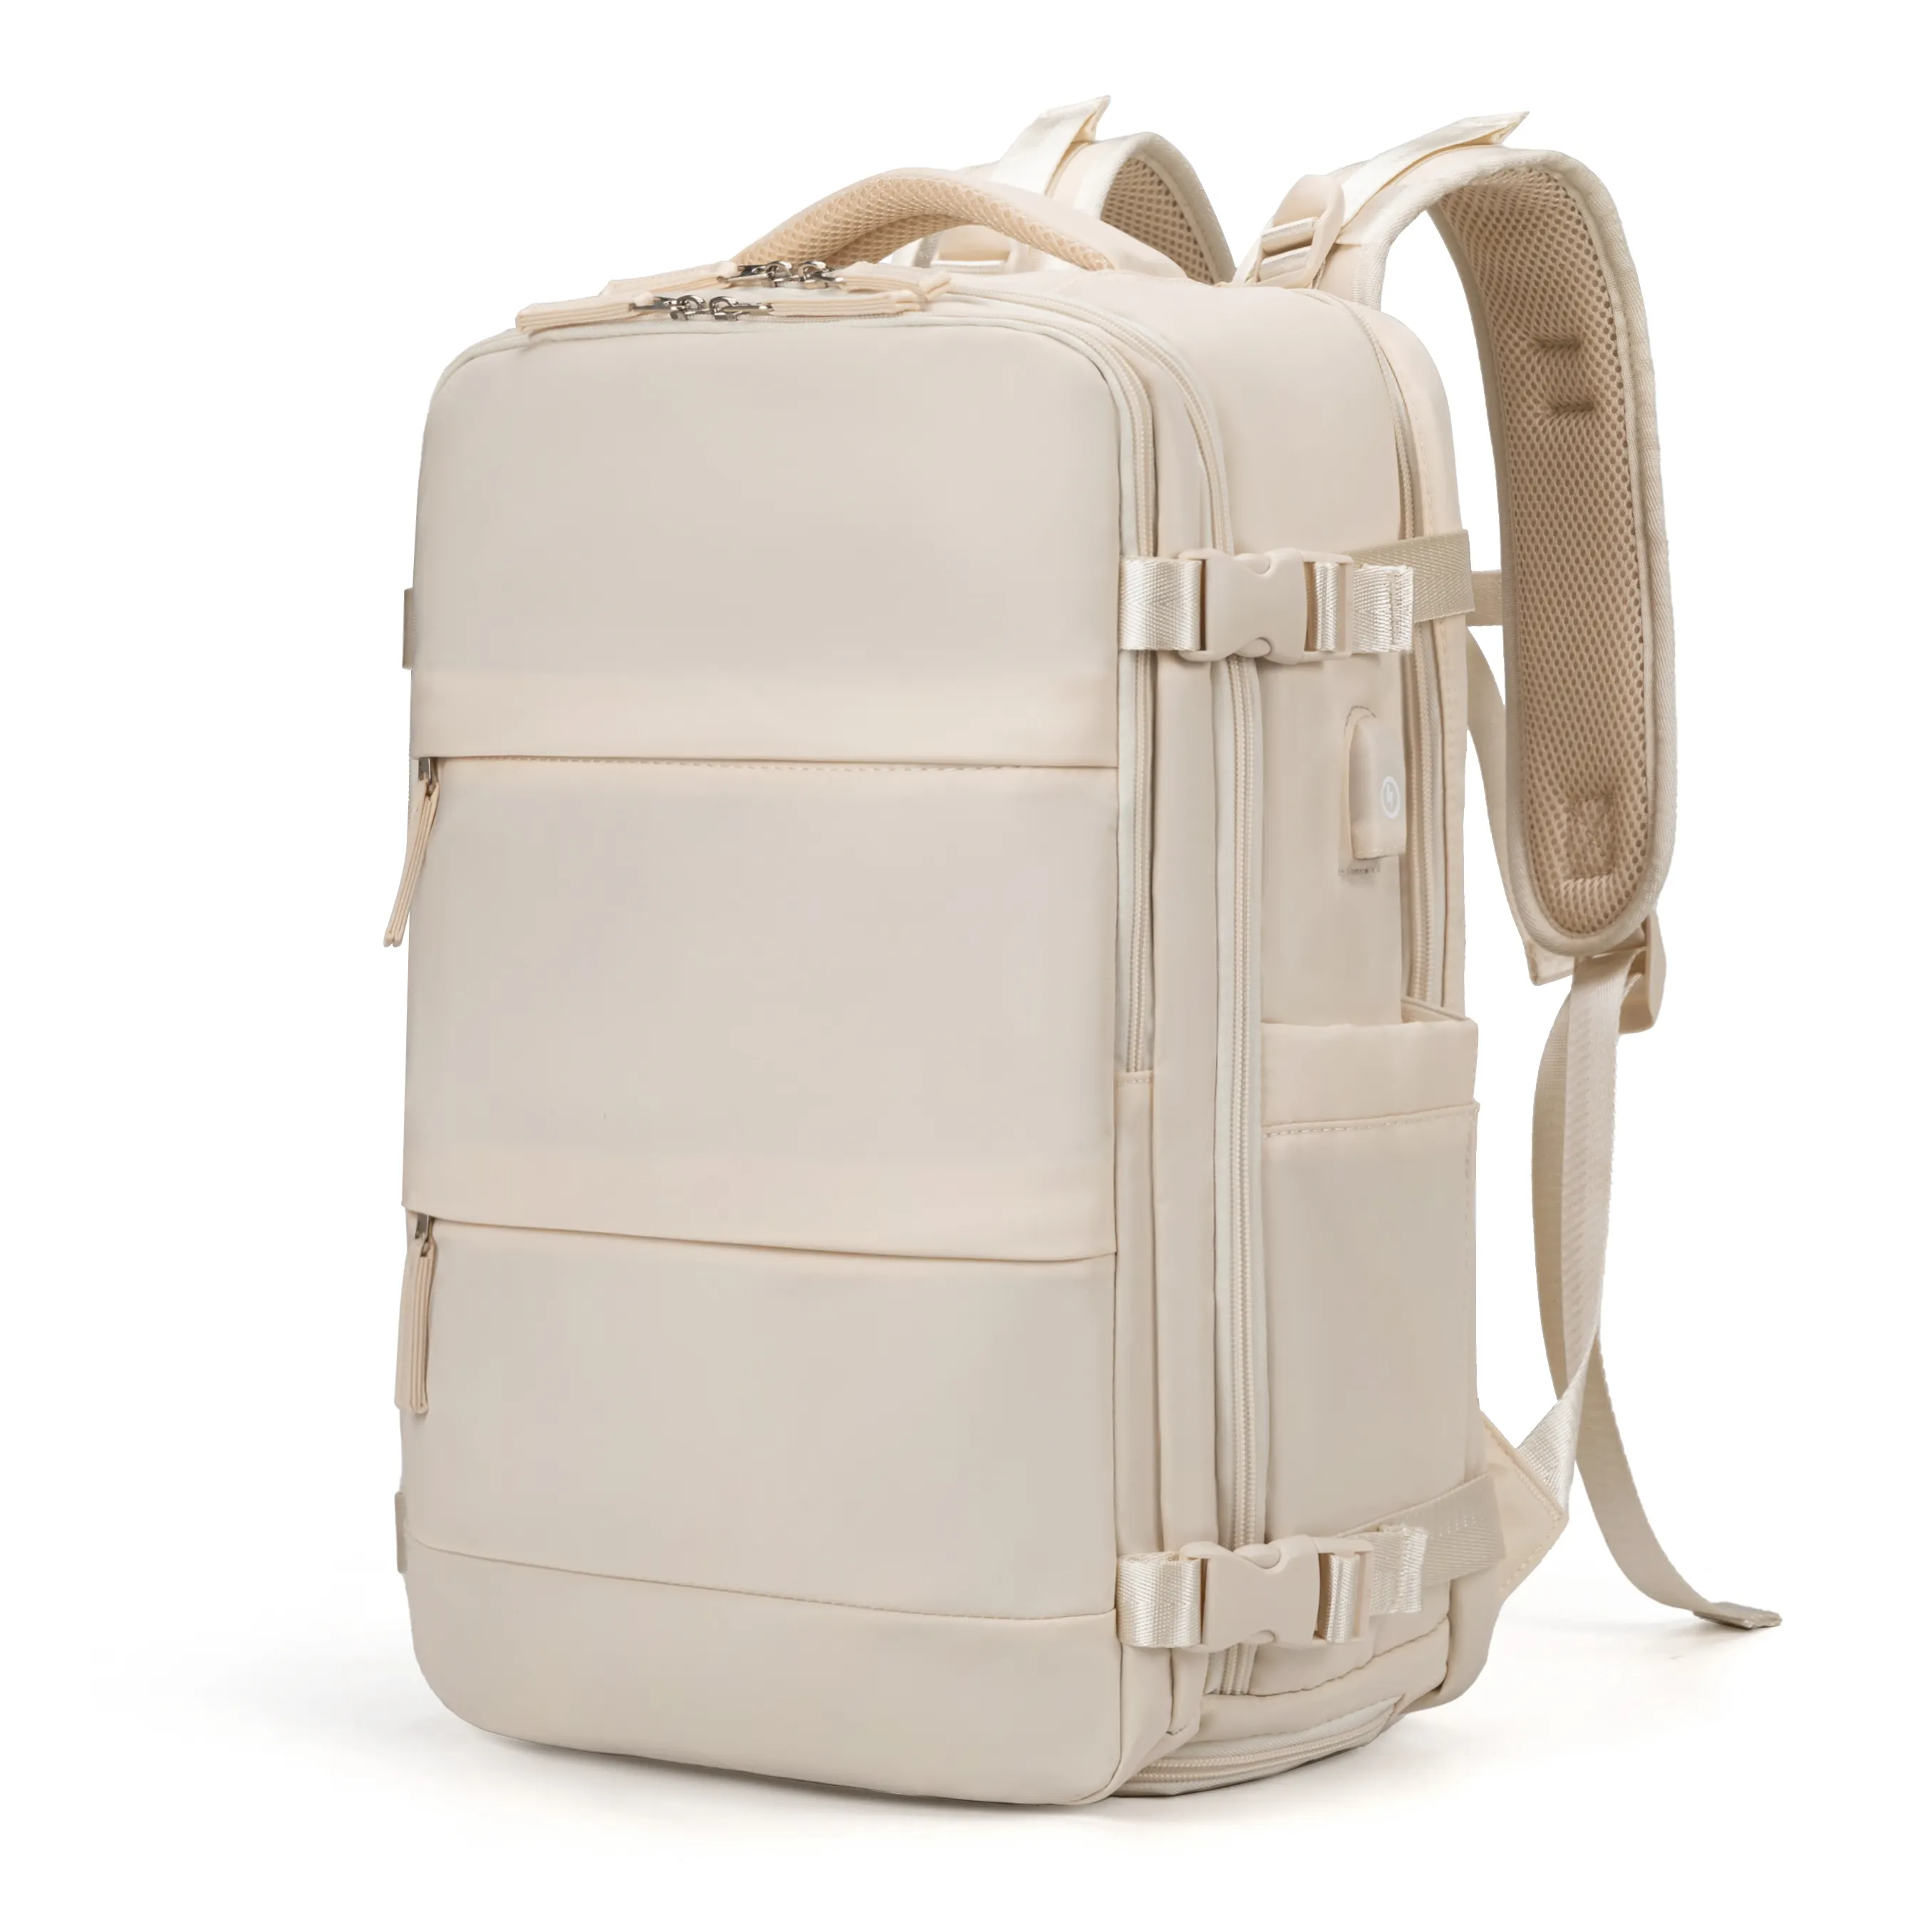 Fabrika sıcak satmak Mochila De Viaje su geçirmez spor sırt çantası bavul Laptop sırt özel Logo USB ile okul çantası üzerinde taşımak